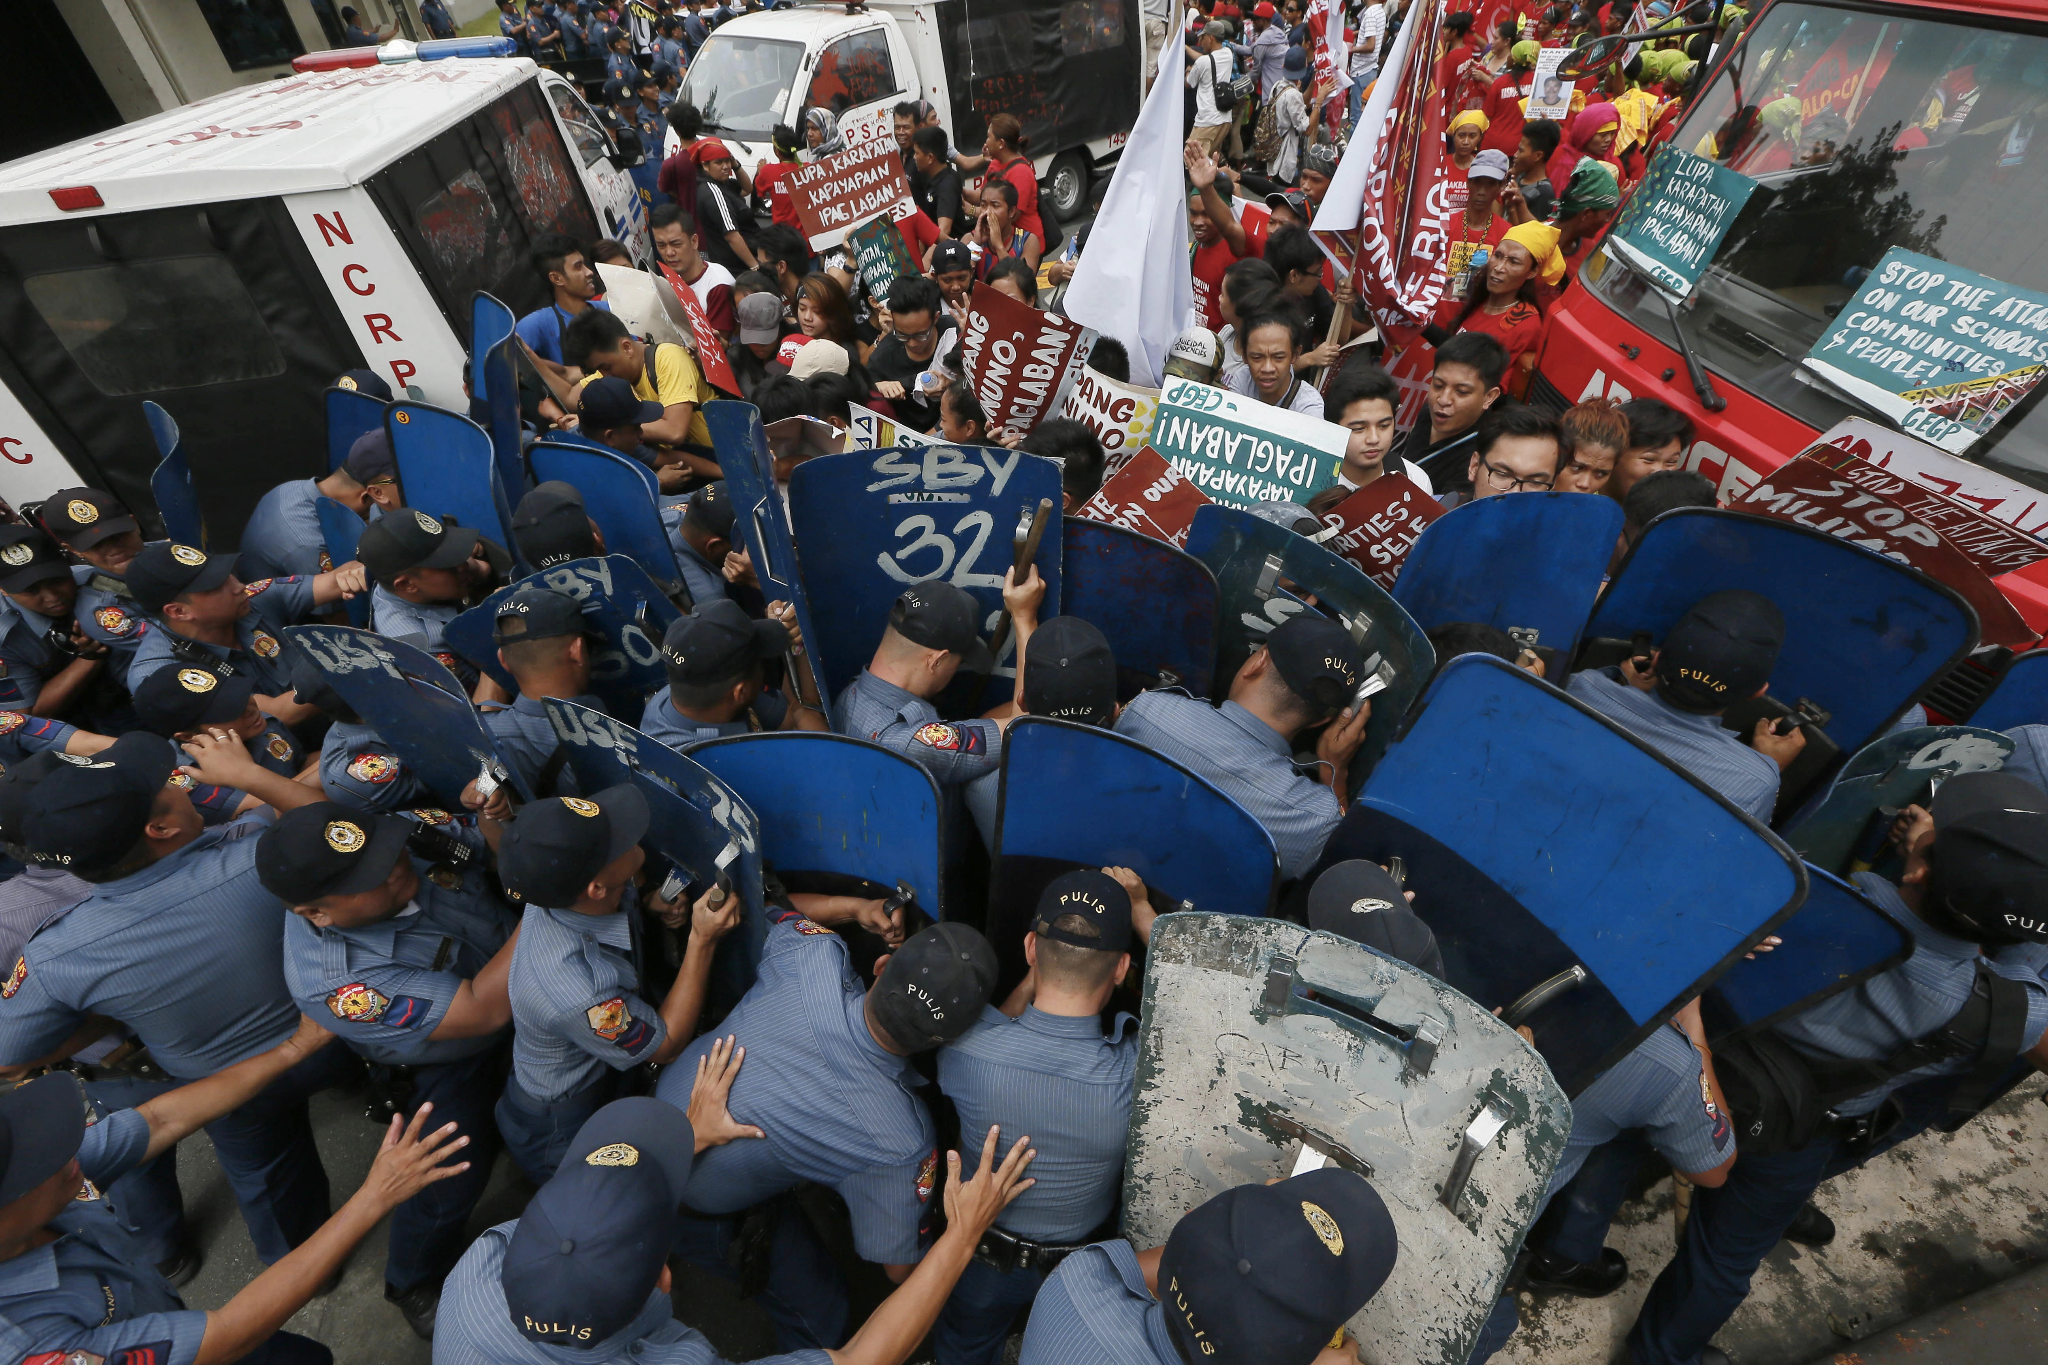 policemen blocks protesters